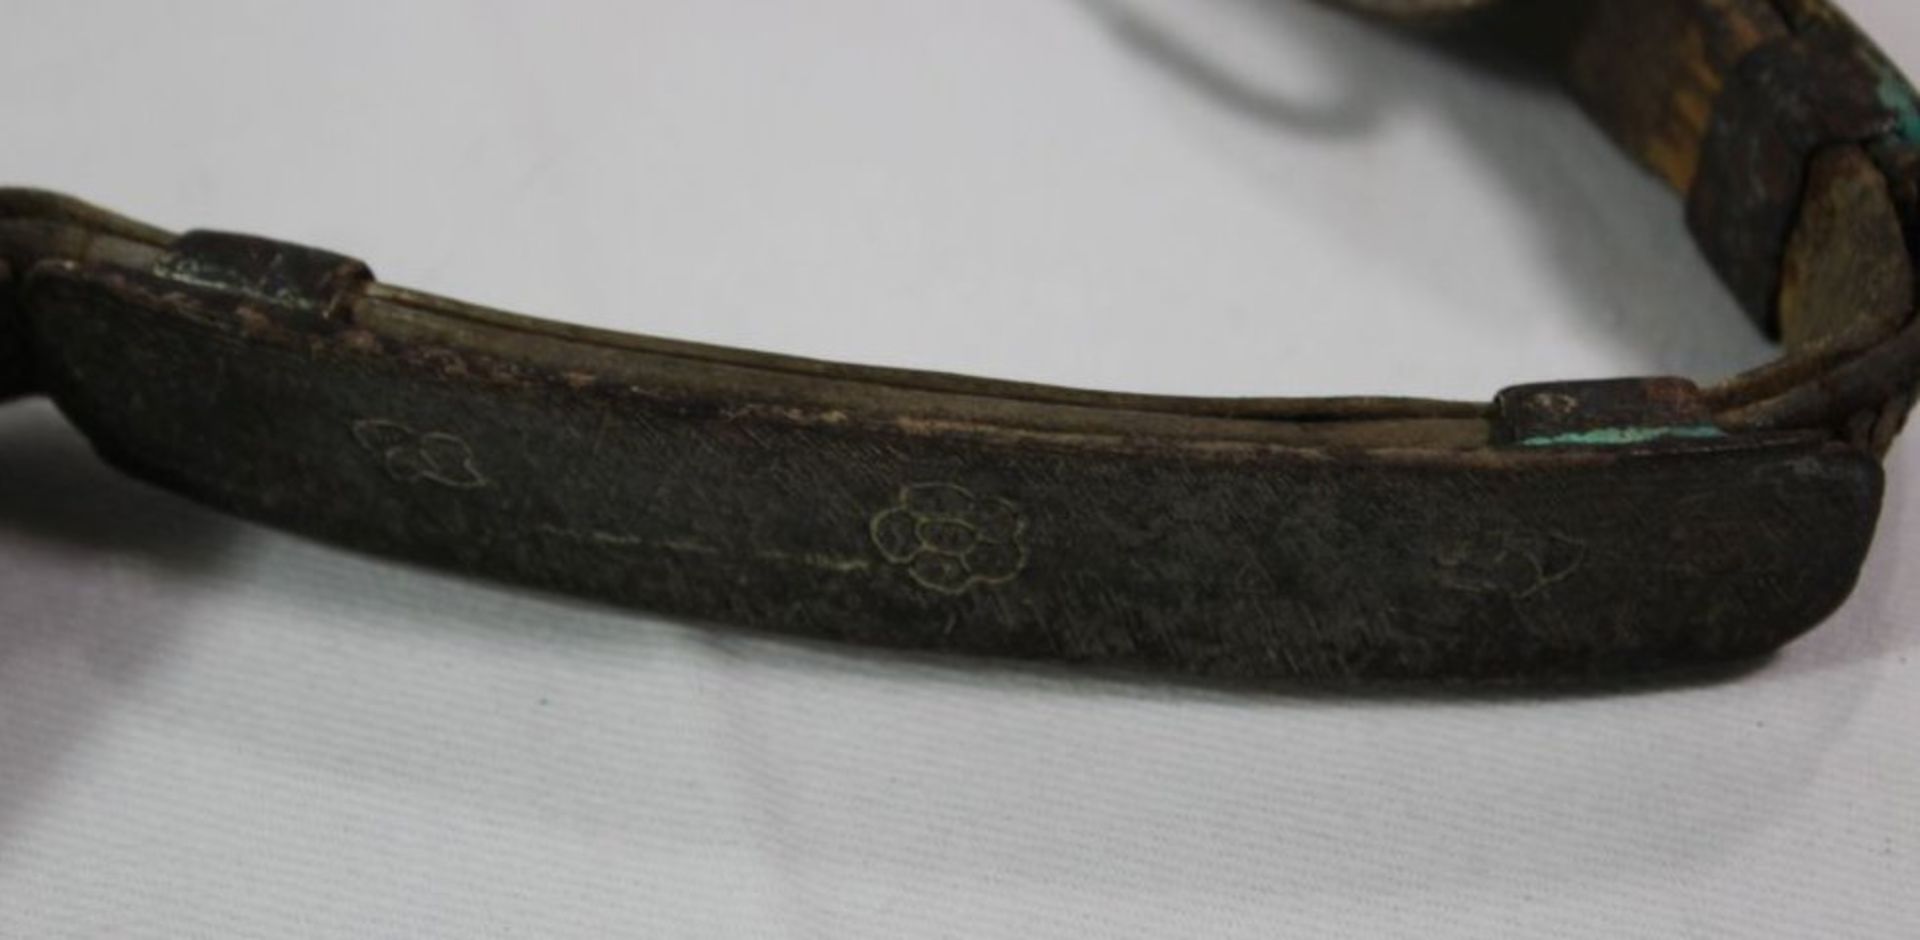 alter Ledergürtel, wohl Tibet, versilberte Metallbeschläge diese ornamentiert, Altersspuren, ca. L- - Bild 2 aus 4